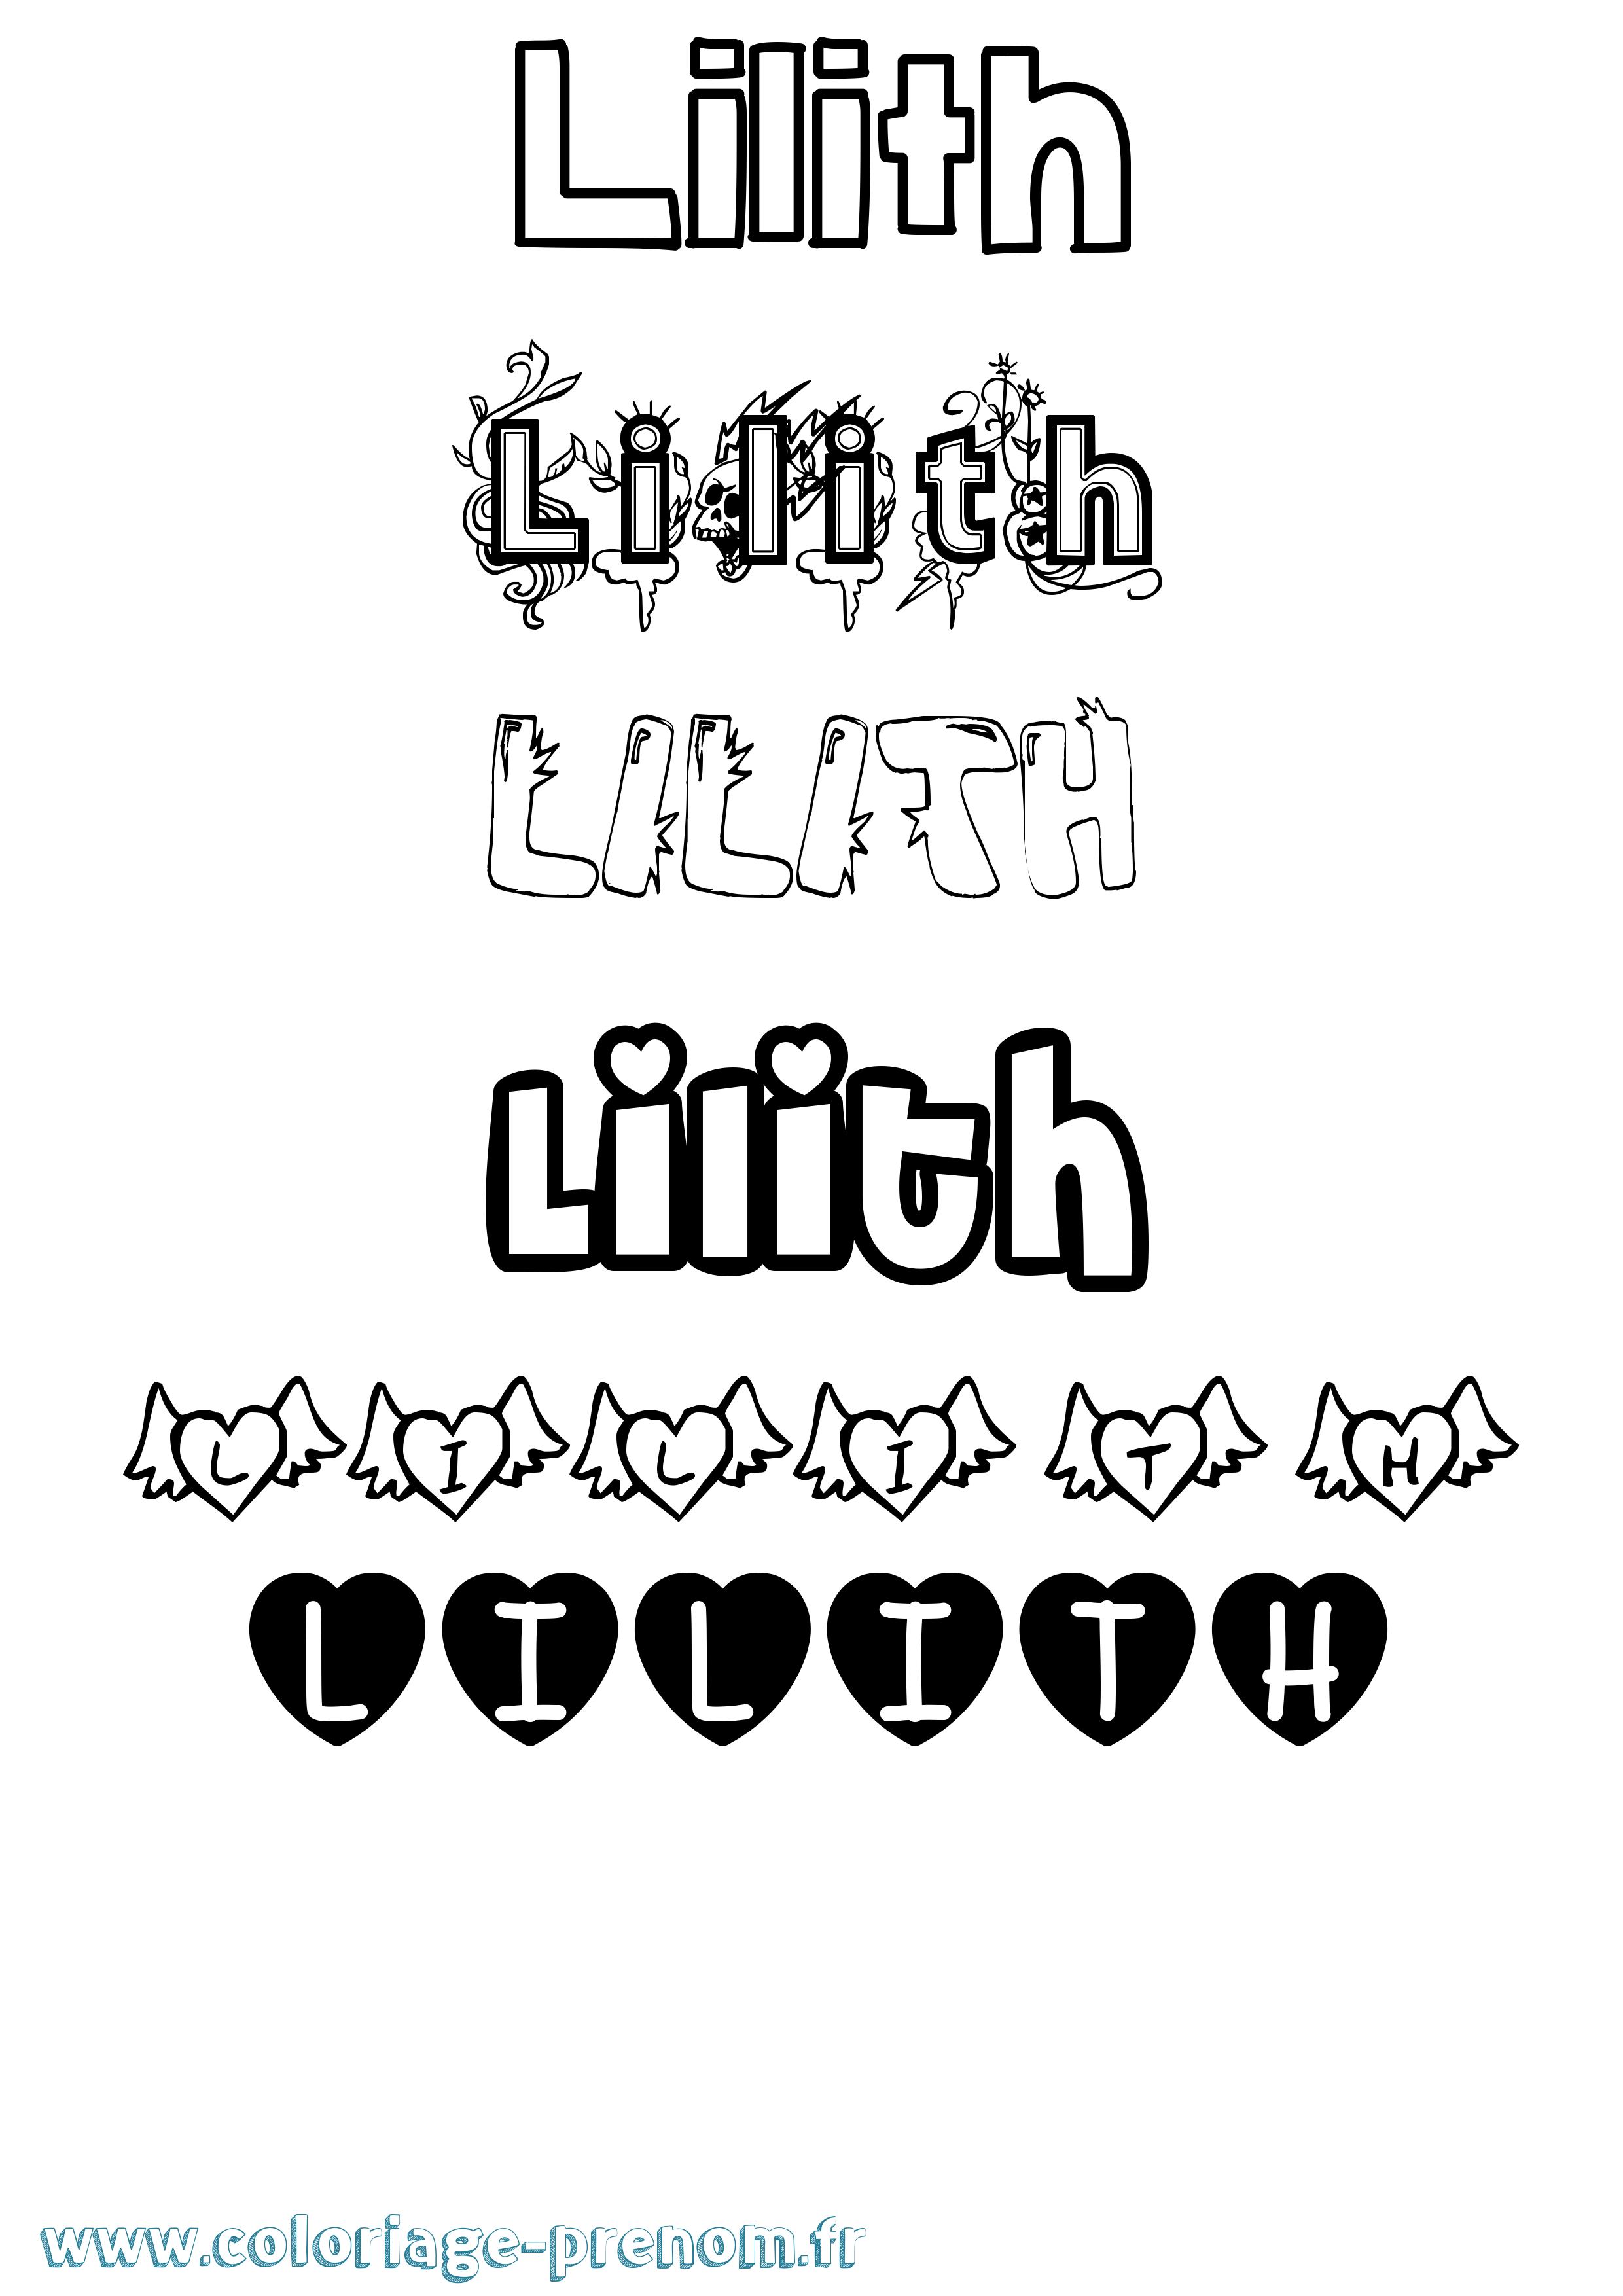 Coloriage prénom Lilith Girly